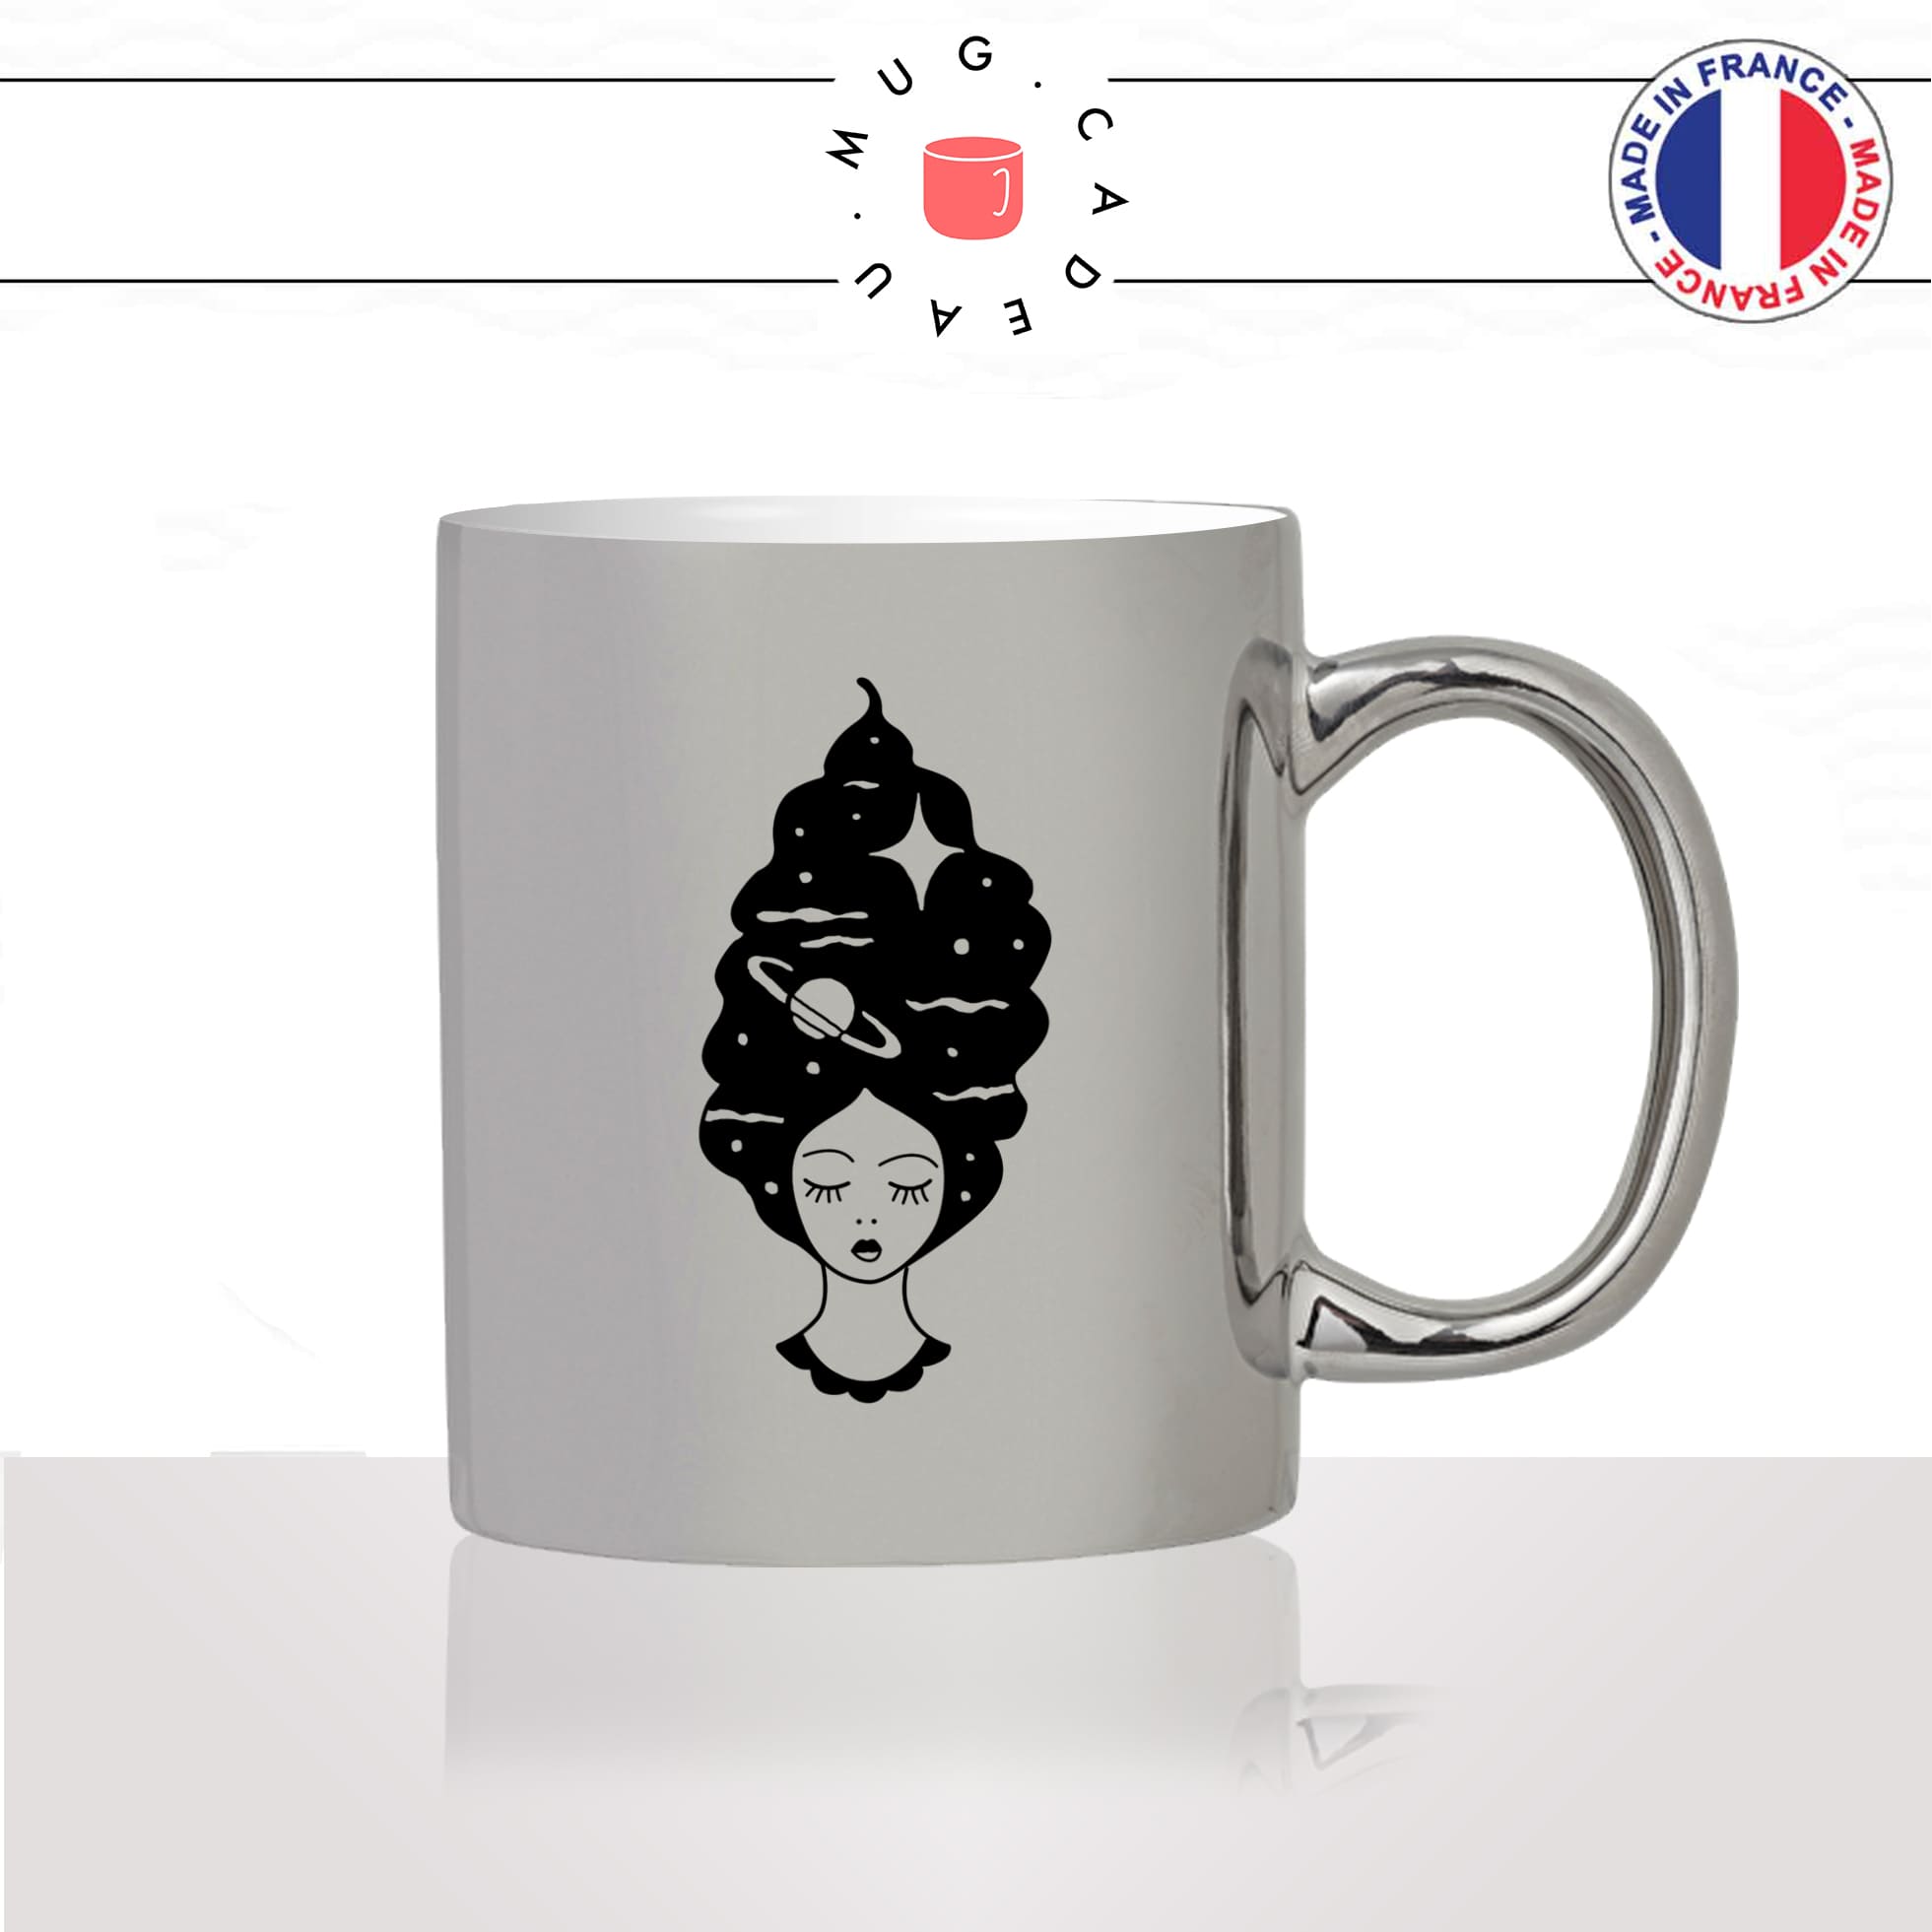 mug-tasse-argent-argenté-silver-femme-chevelure-coiffeur-etoiles-espace-lune-planetes-terre-mignon-humour-idée-cadeau-fun-cool-café-thé2